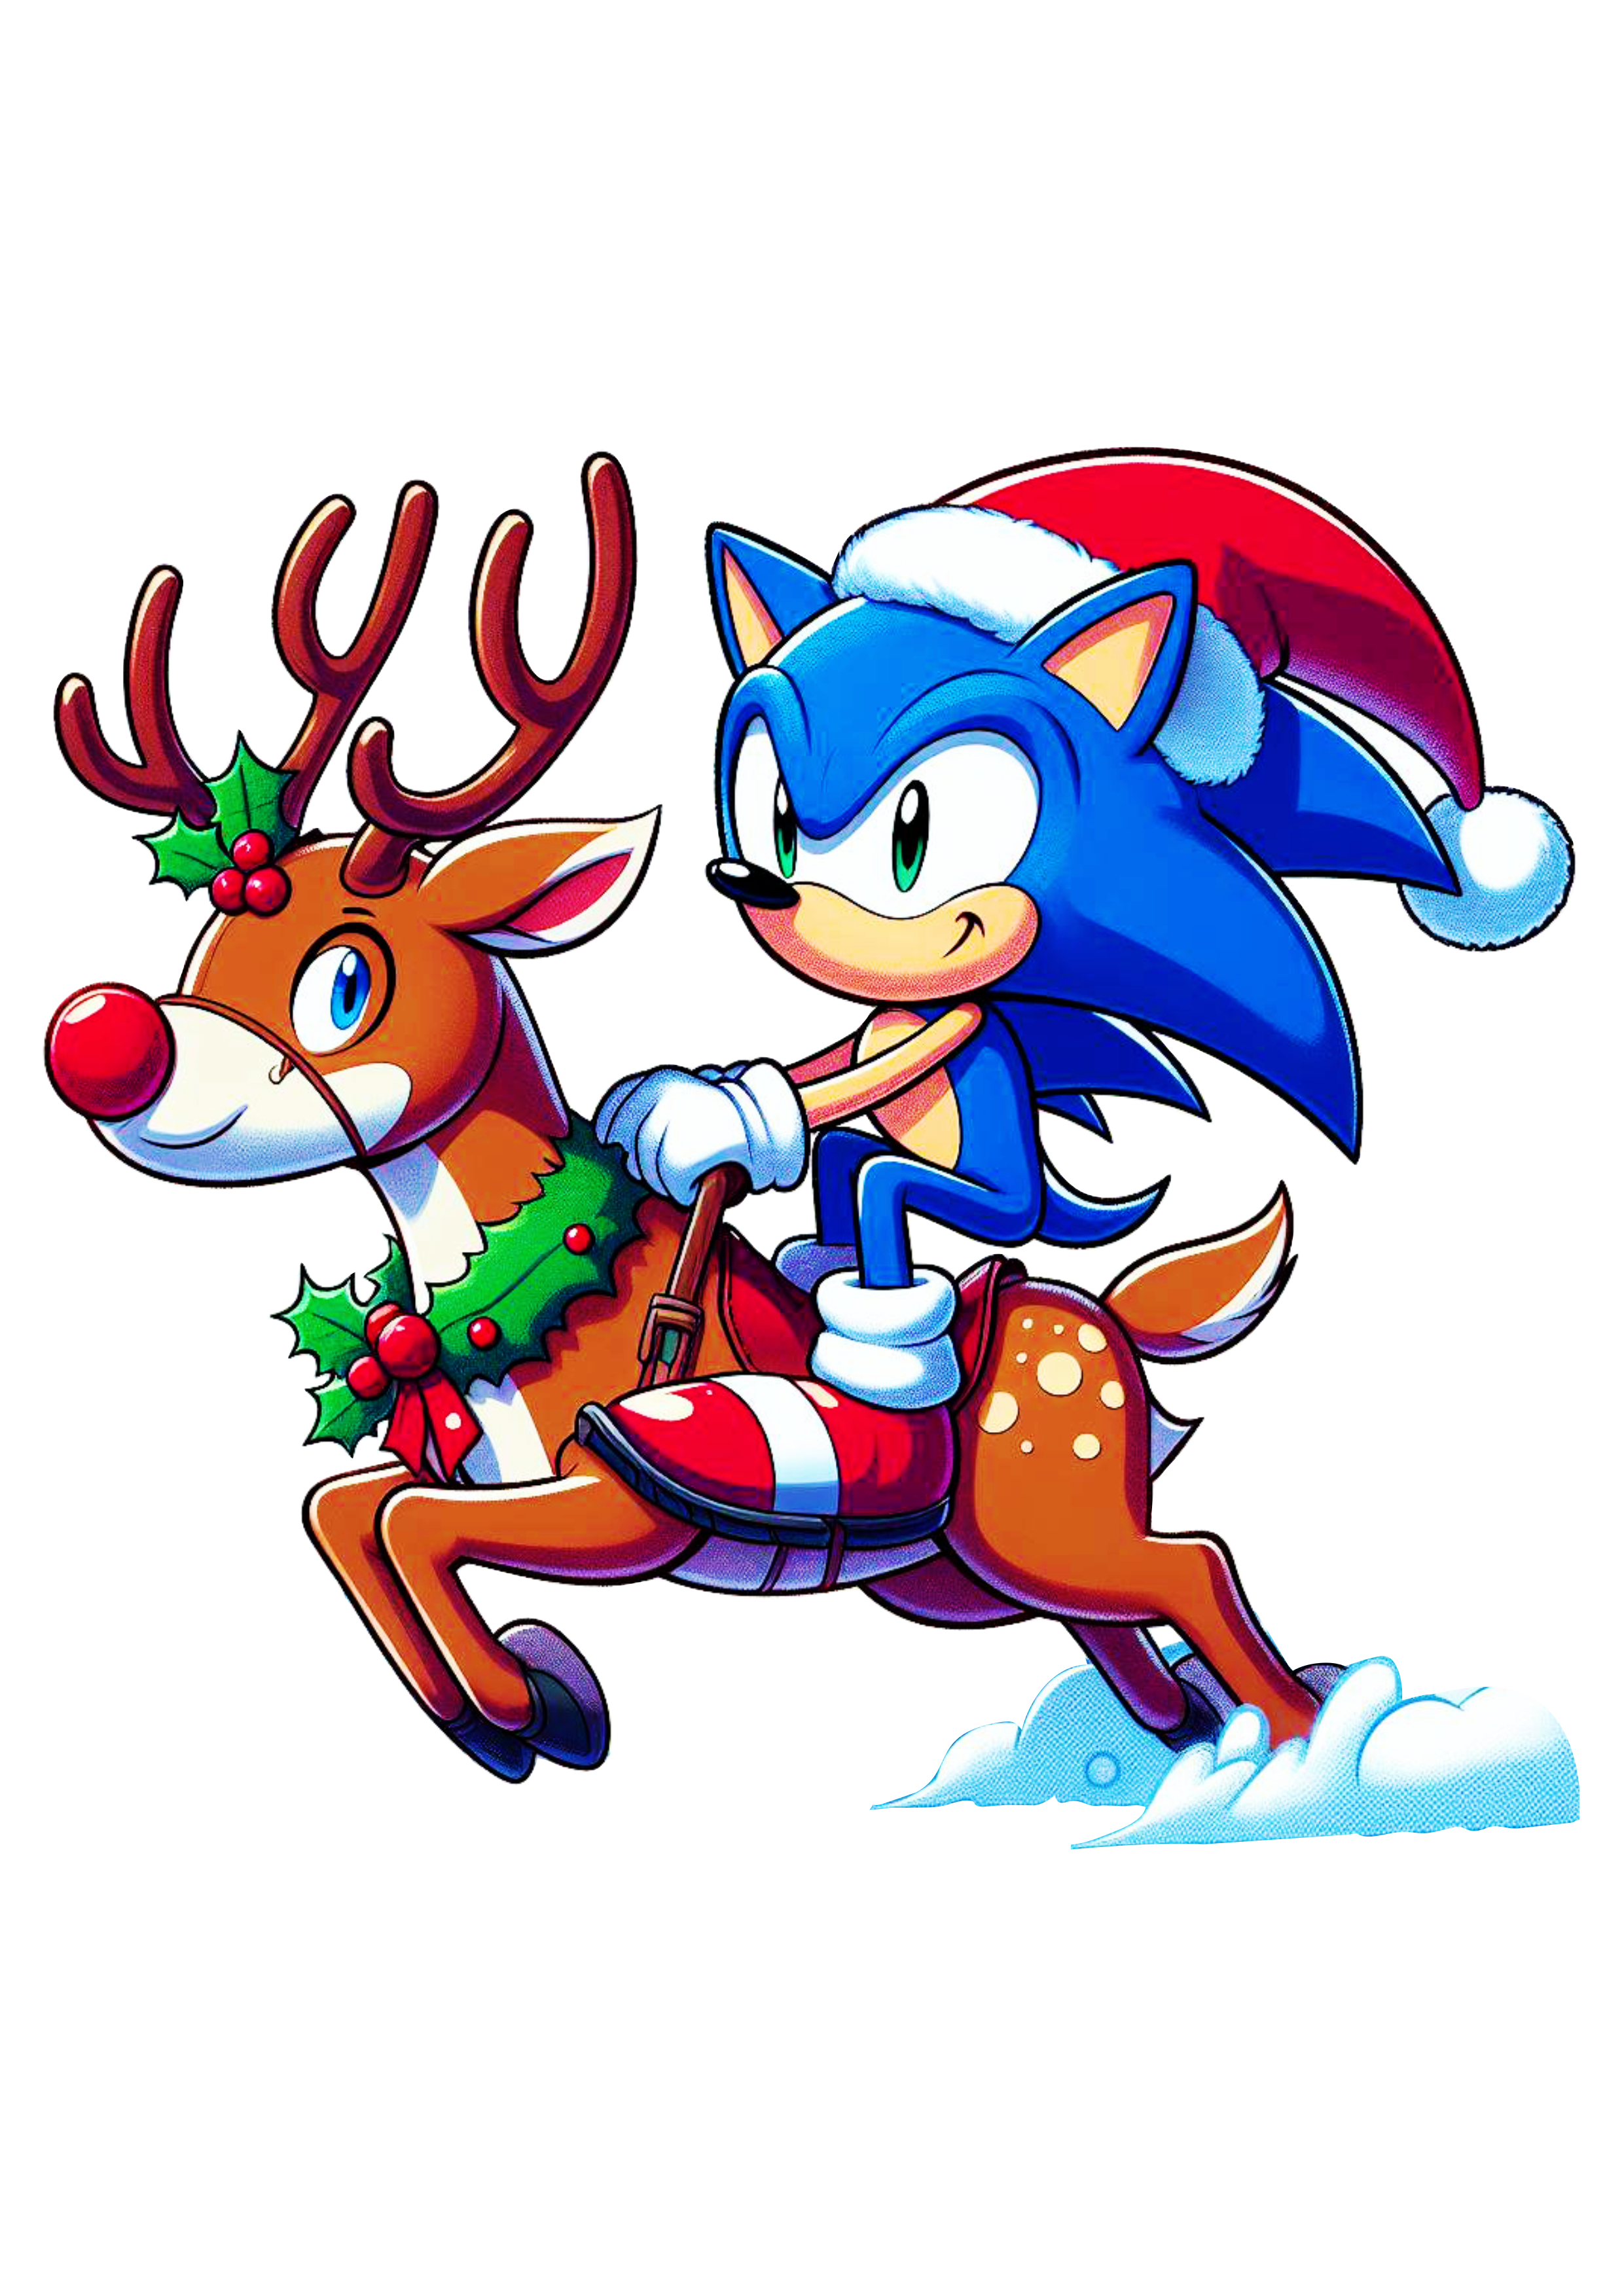 Imagens de natal Sonic the hedgehog e tails com gorro do Papai Noel montado em uma rena ilustração games png